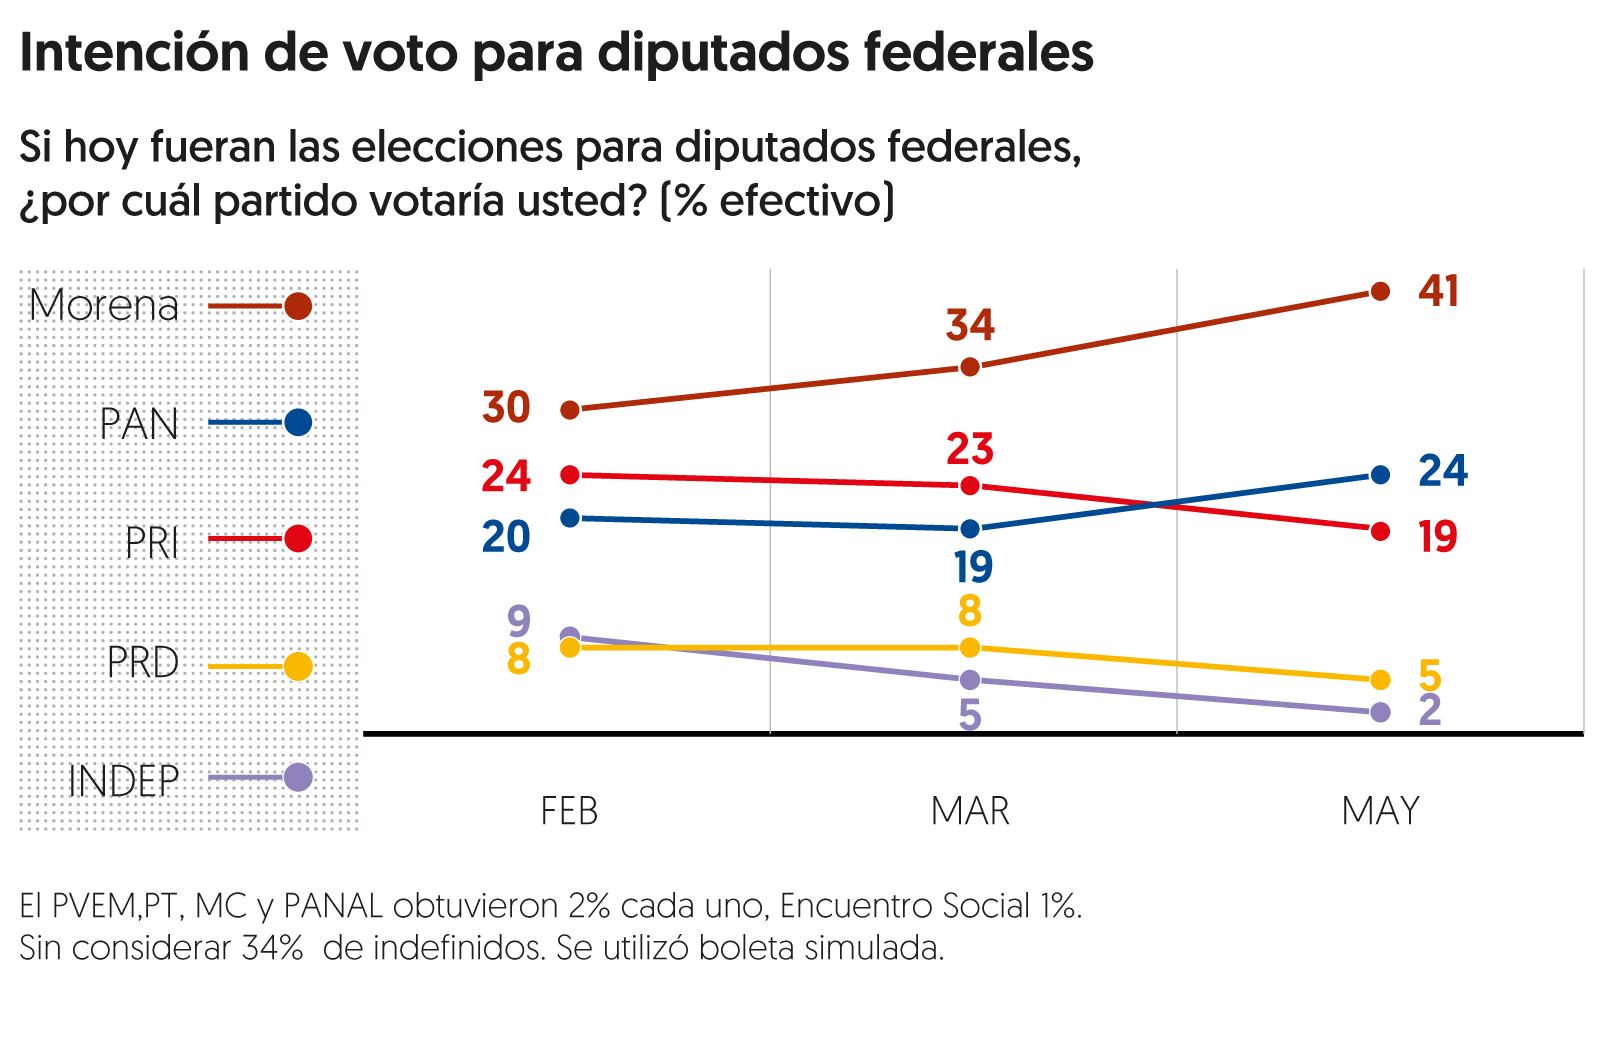 Encuesta de preferencias electorales de <em>El Financiero</em>. Publicación: 14 de mayo de 2018.